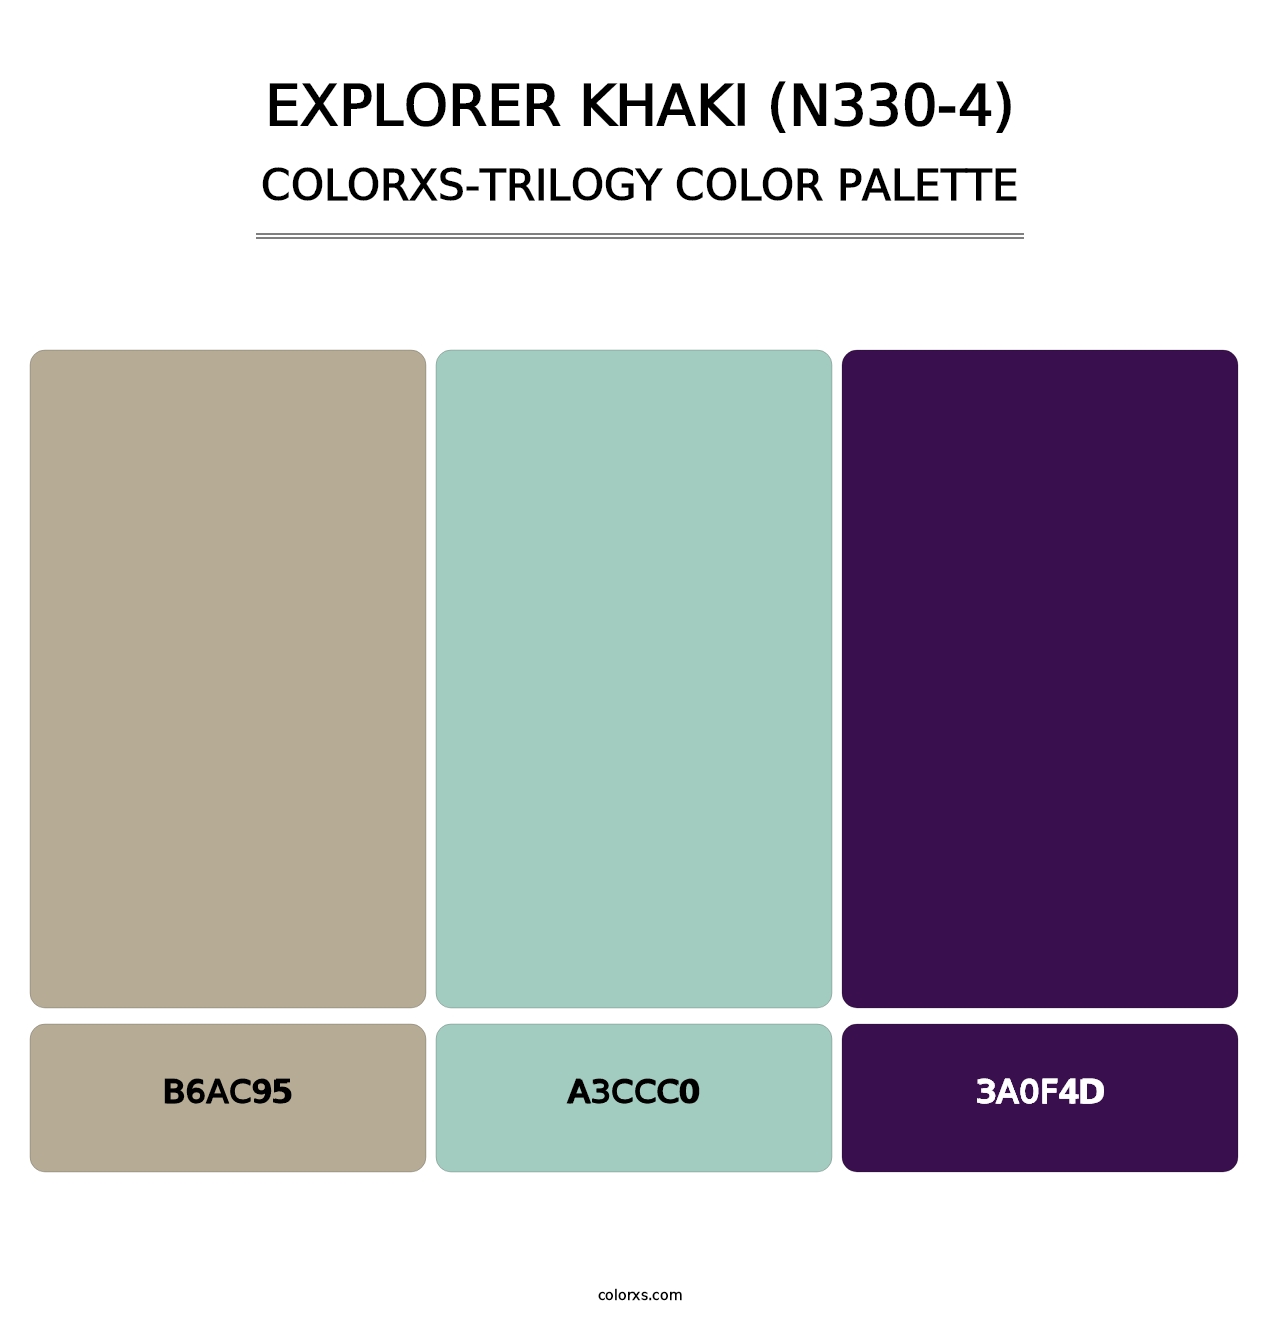 Explorer Khaki (N330-4) - Colorxs Trilogy Palette